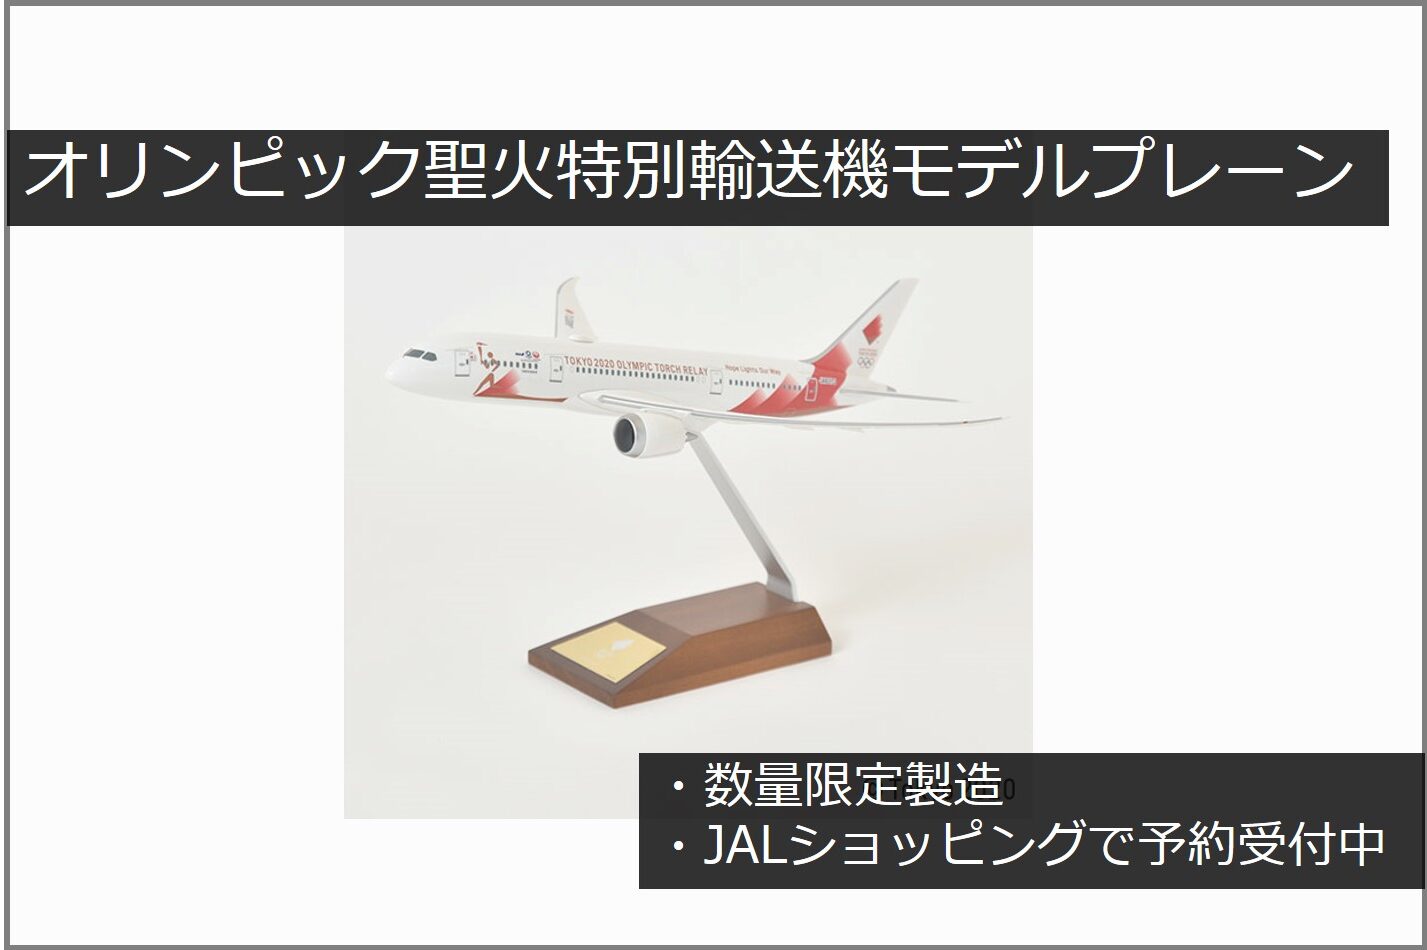 26680円 買収 東京2020オリンピック聖火特別輸送機 限定数スナップインモデル